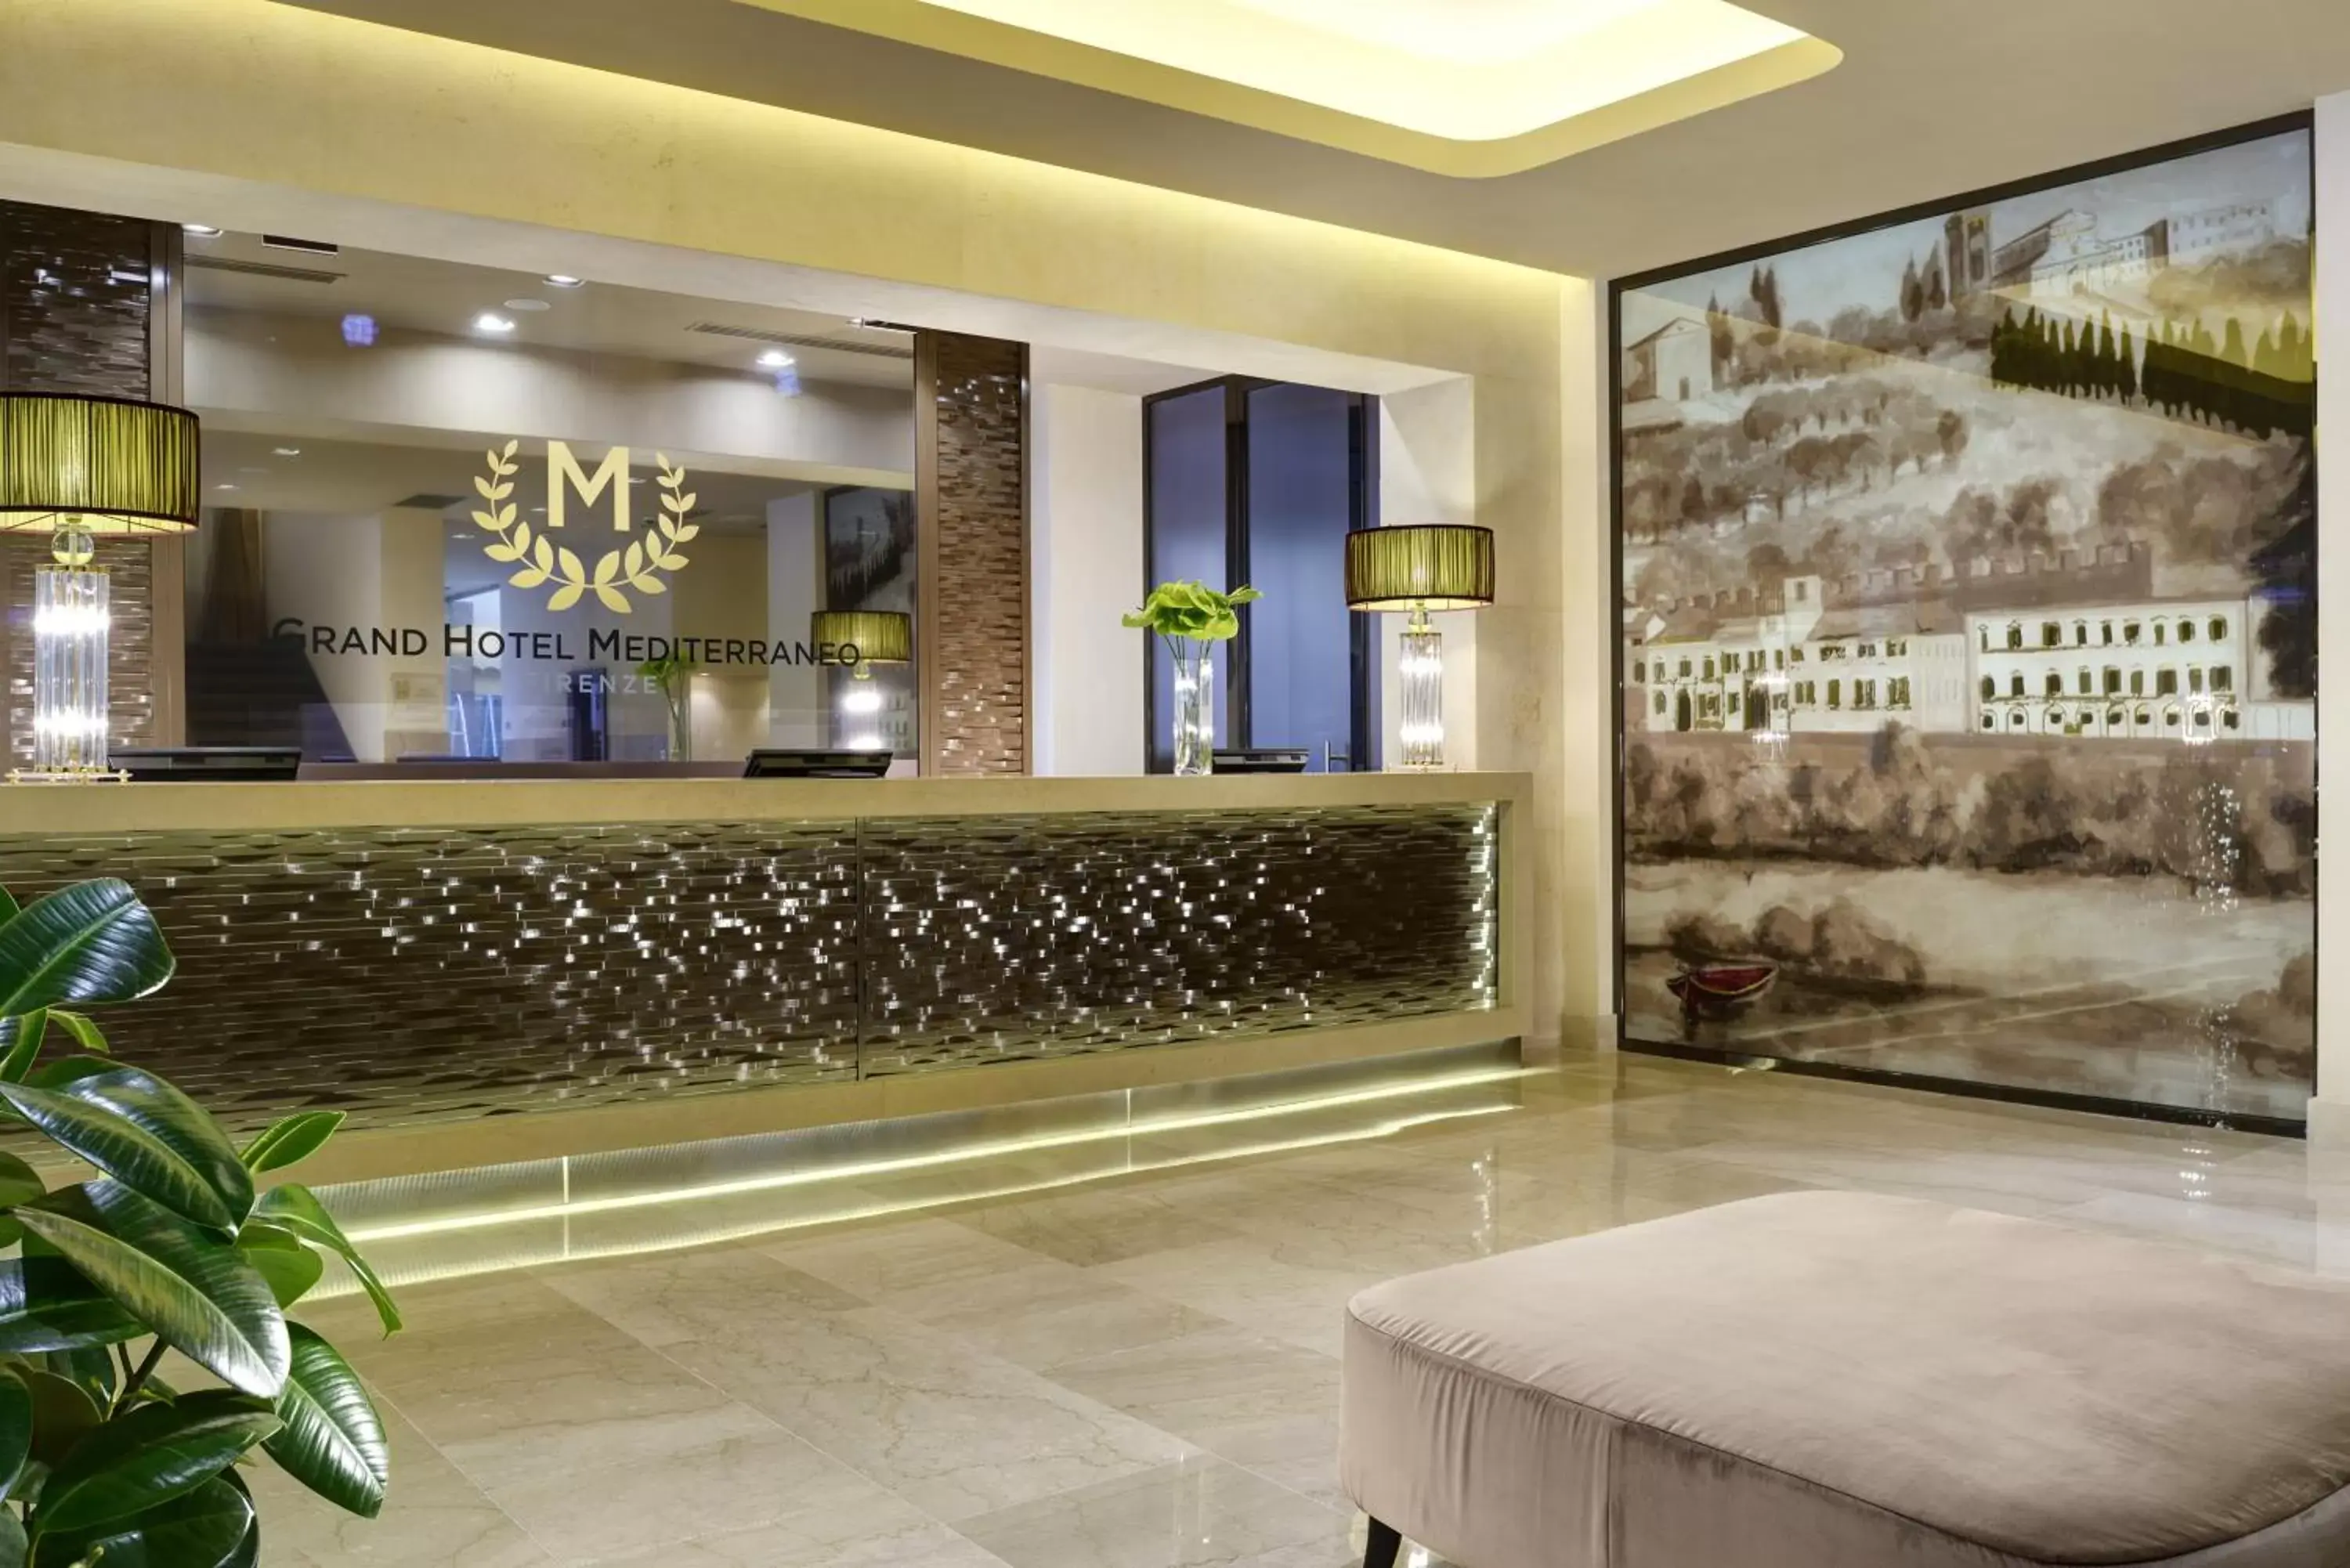 Lobby or reception in FH55 Grand Hotel Mediterraneo